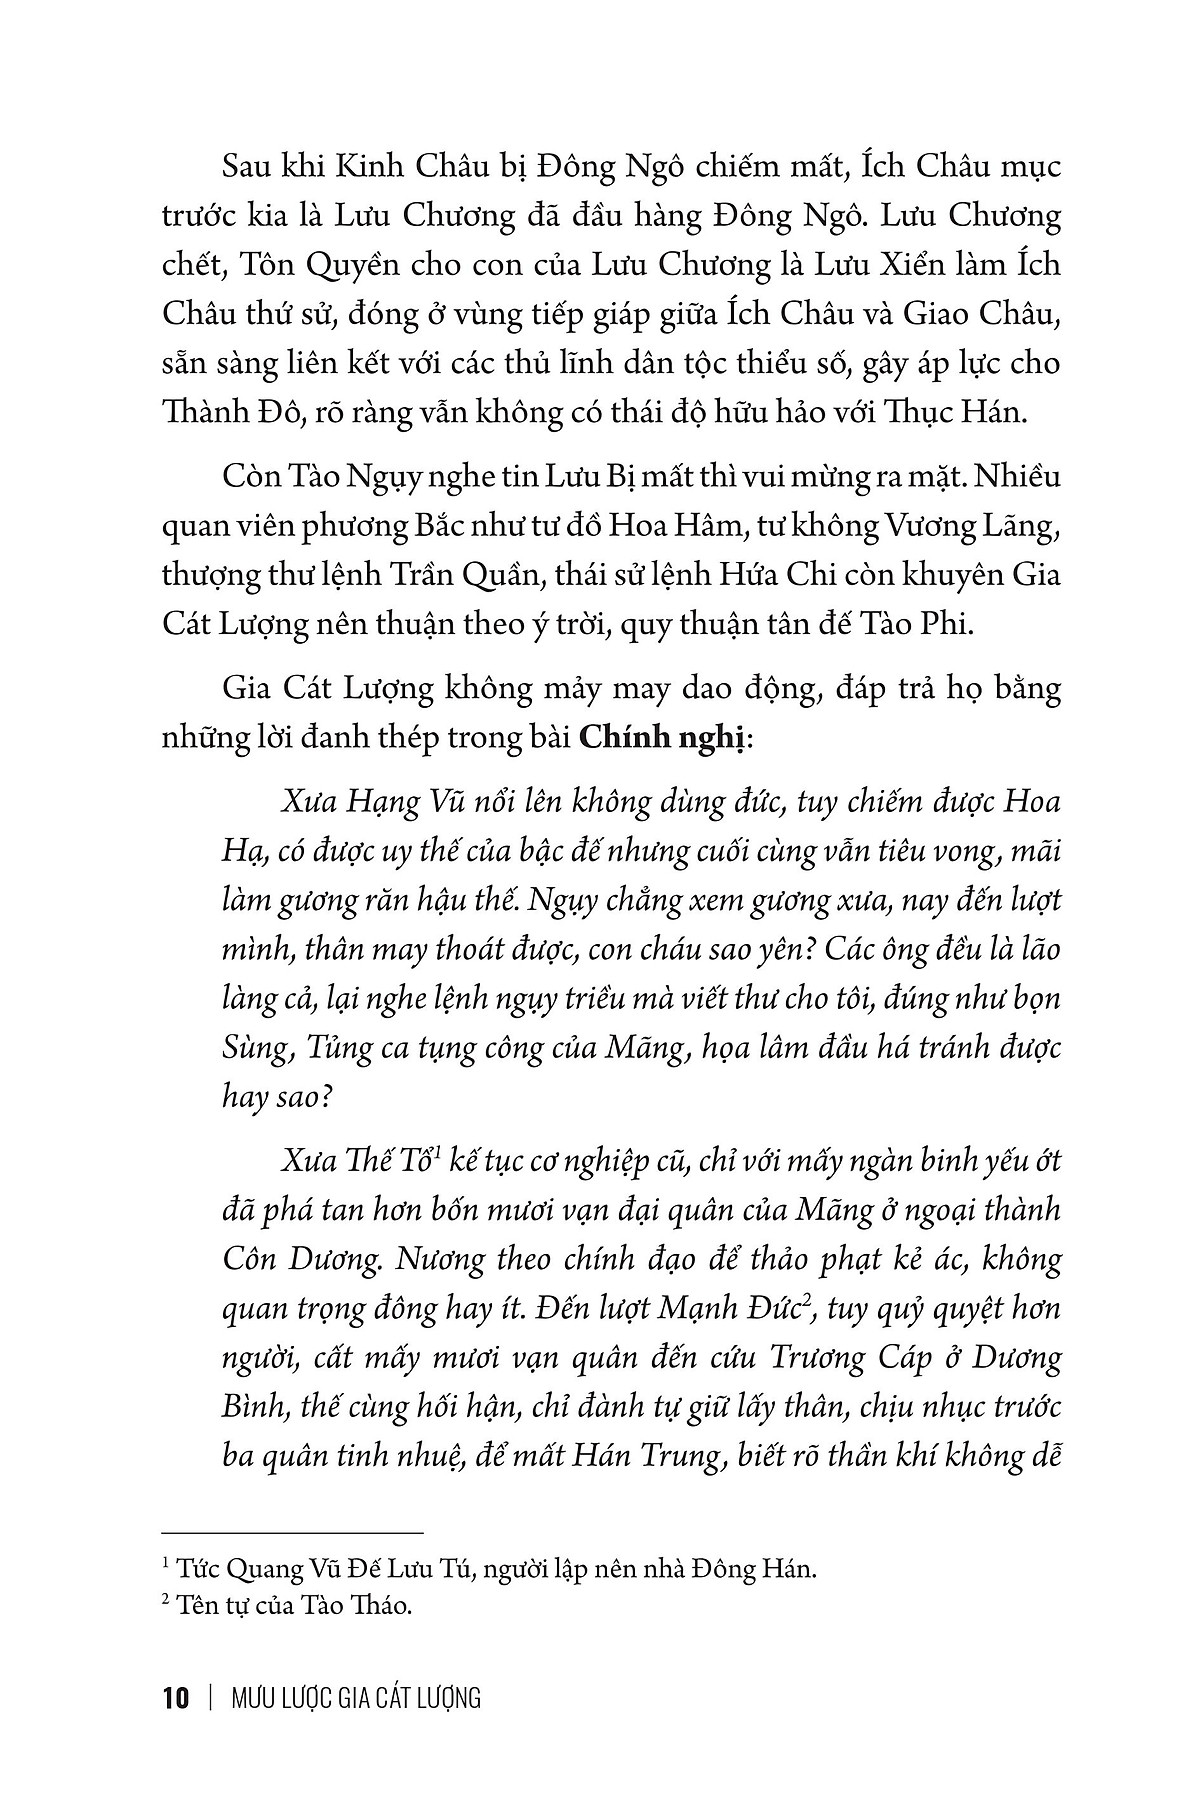 Mưu Lược Trung Hoa - Tập 2 - Mưu Lược Gia Cát Lượng - Bìa Cứng PDF